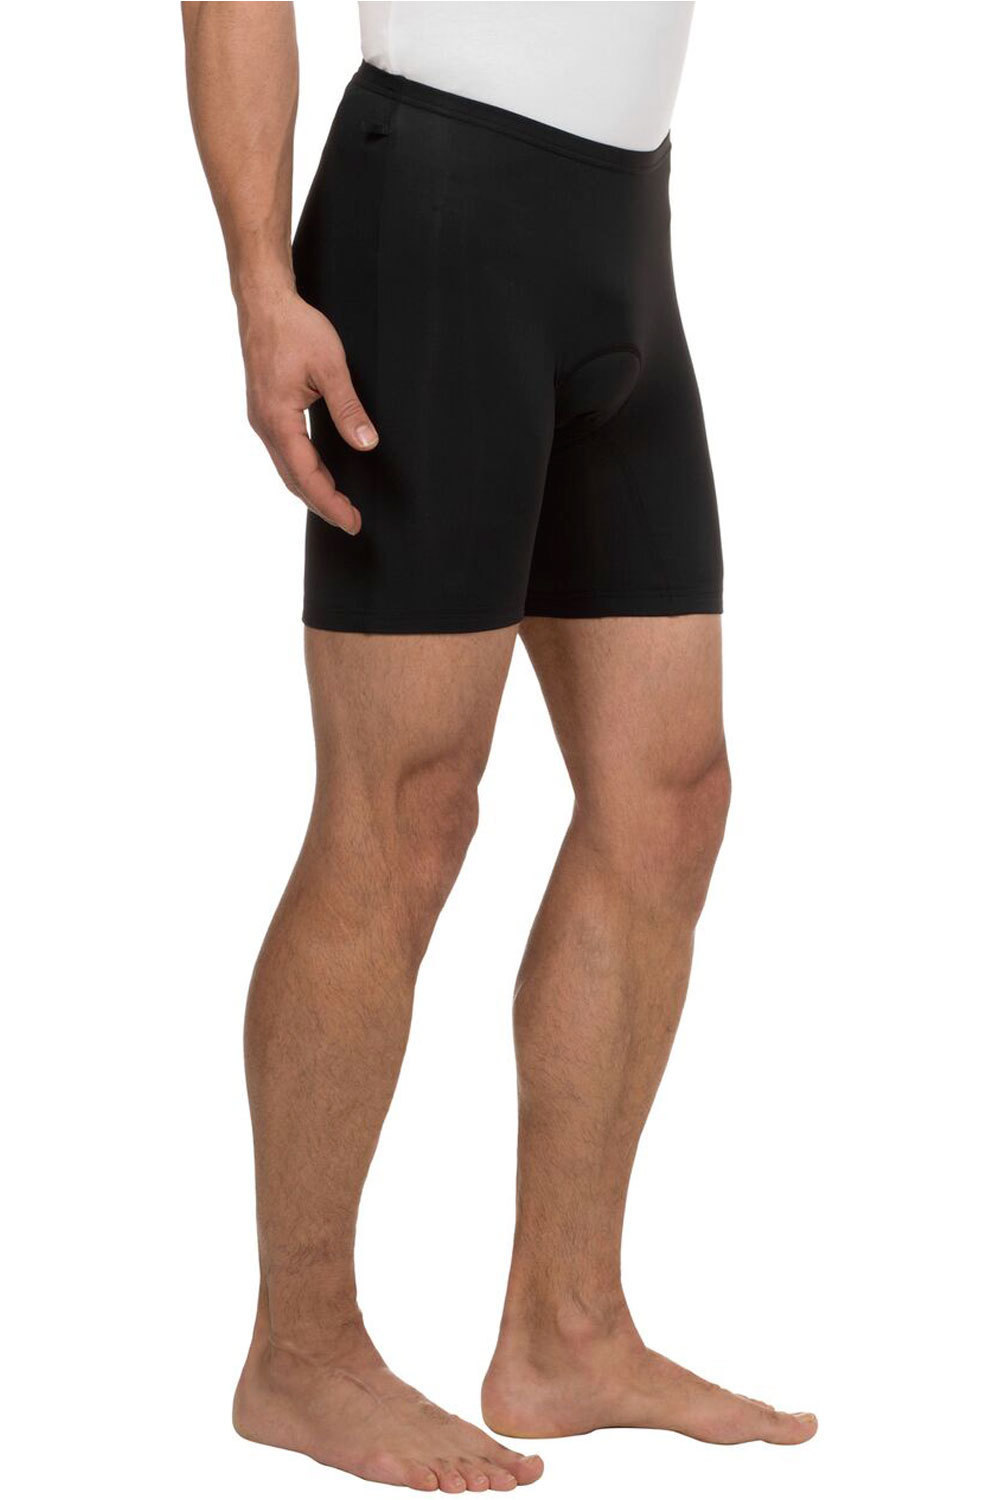 Comprar en oferta VAUDE Men's Bike Innerpants III black